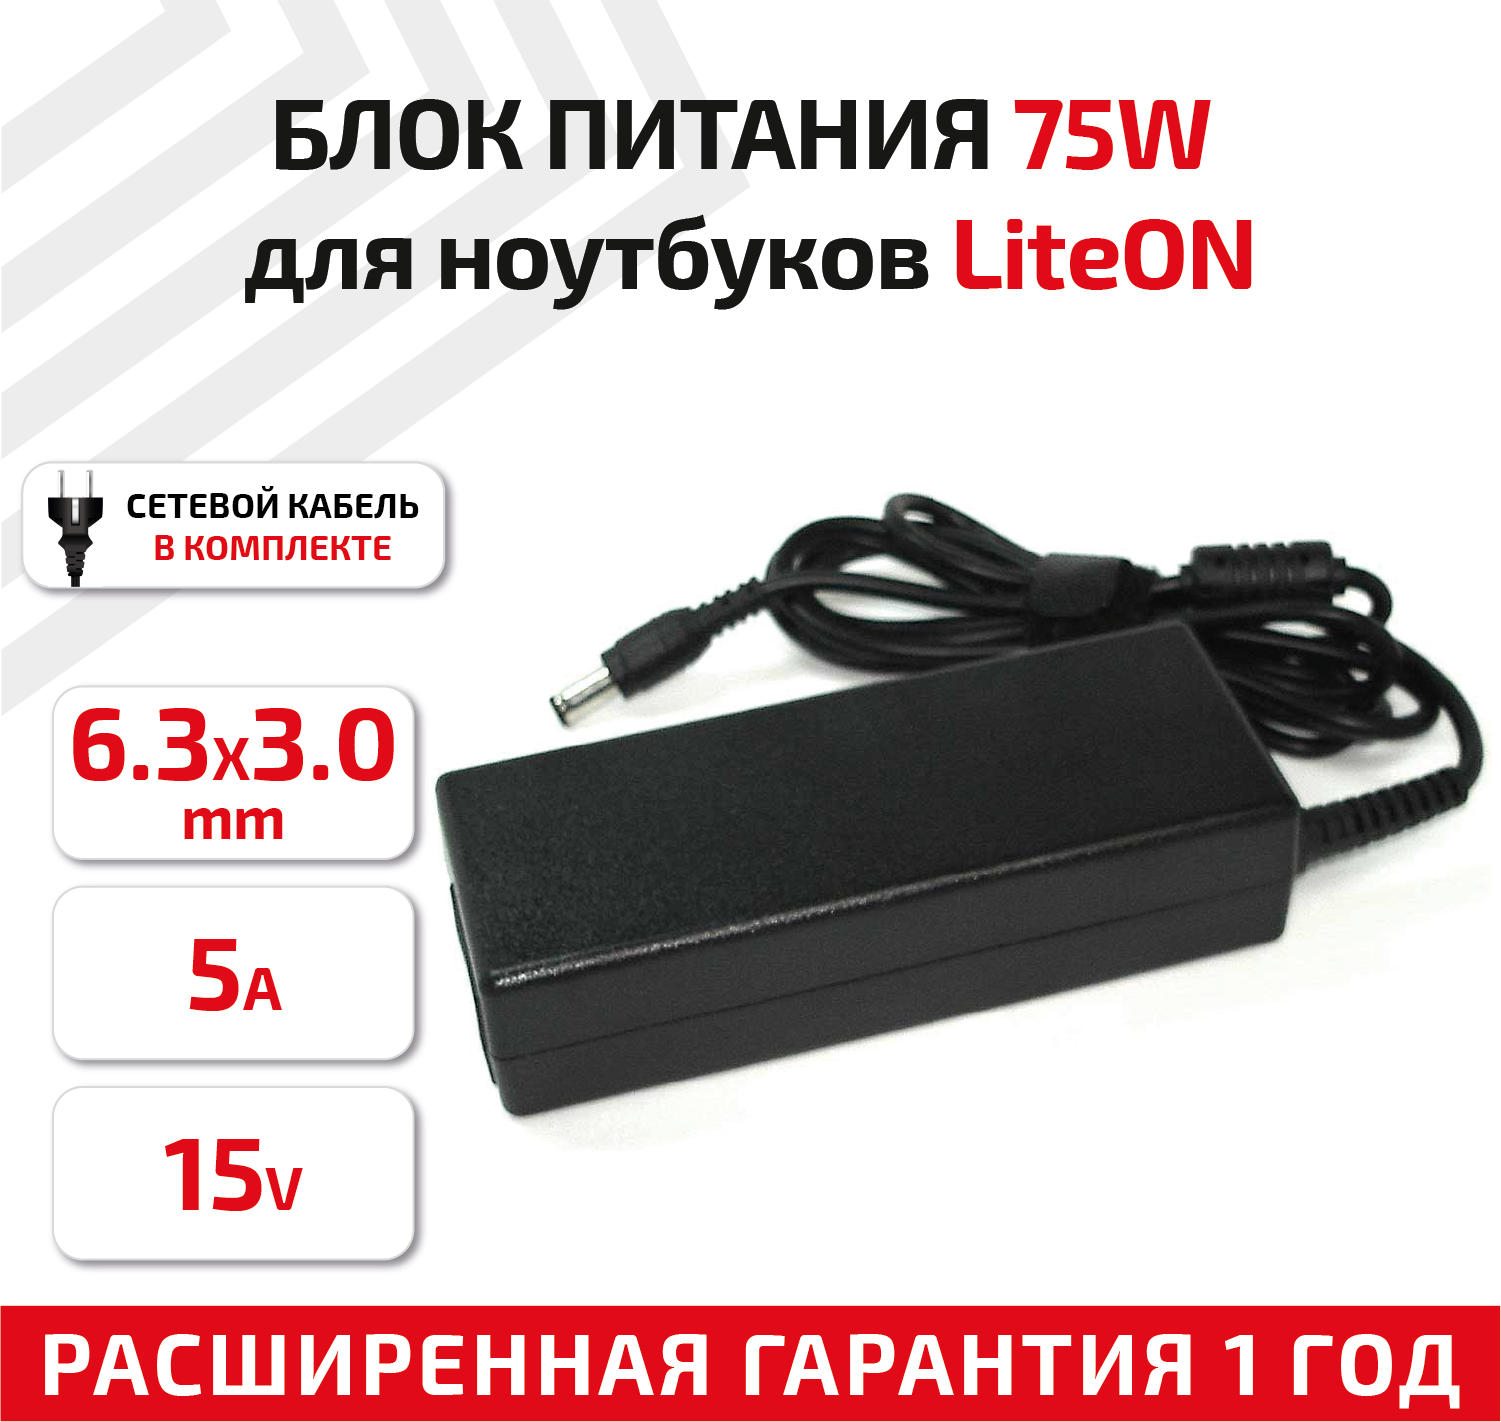 Зарядное устройство (блок питания/зарядка) для ноутбука Liteon 15В, 5А, 6.3x3.0мм, REPLACEMENT